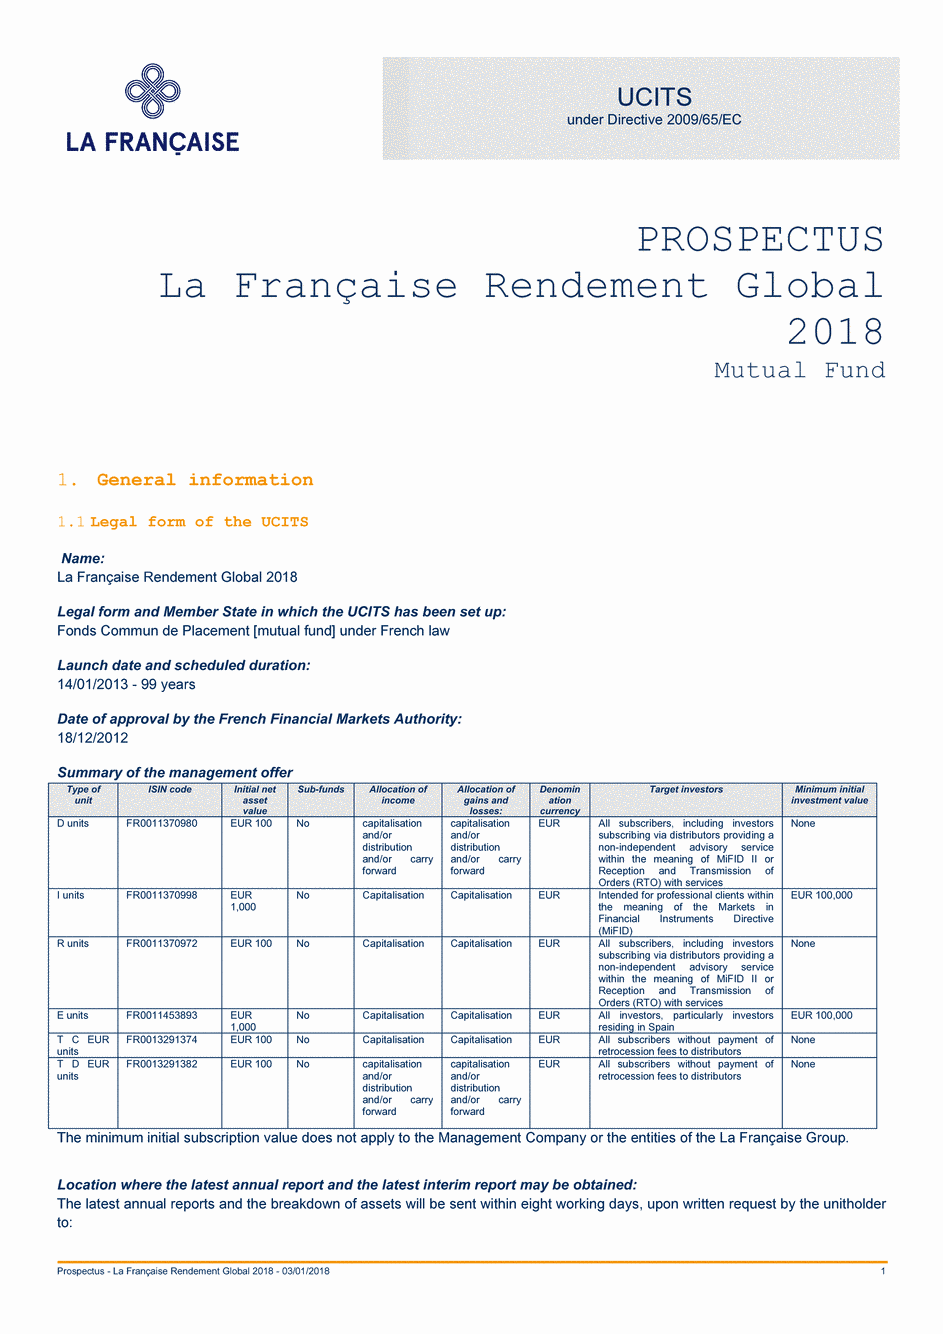 Prospectus LA FRANÇAISE RENDEMENT GLOBAL 2018 Part I - 03/01/2018 - Anglais